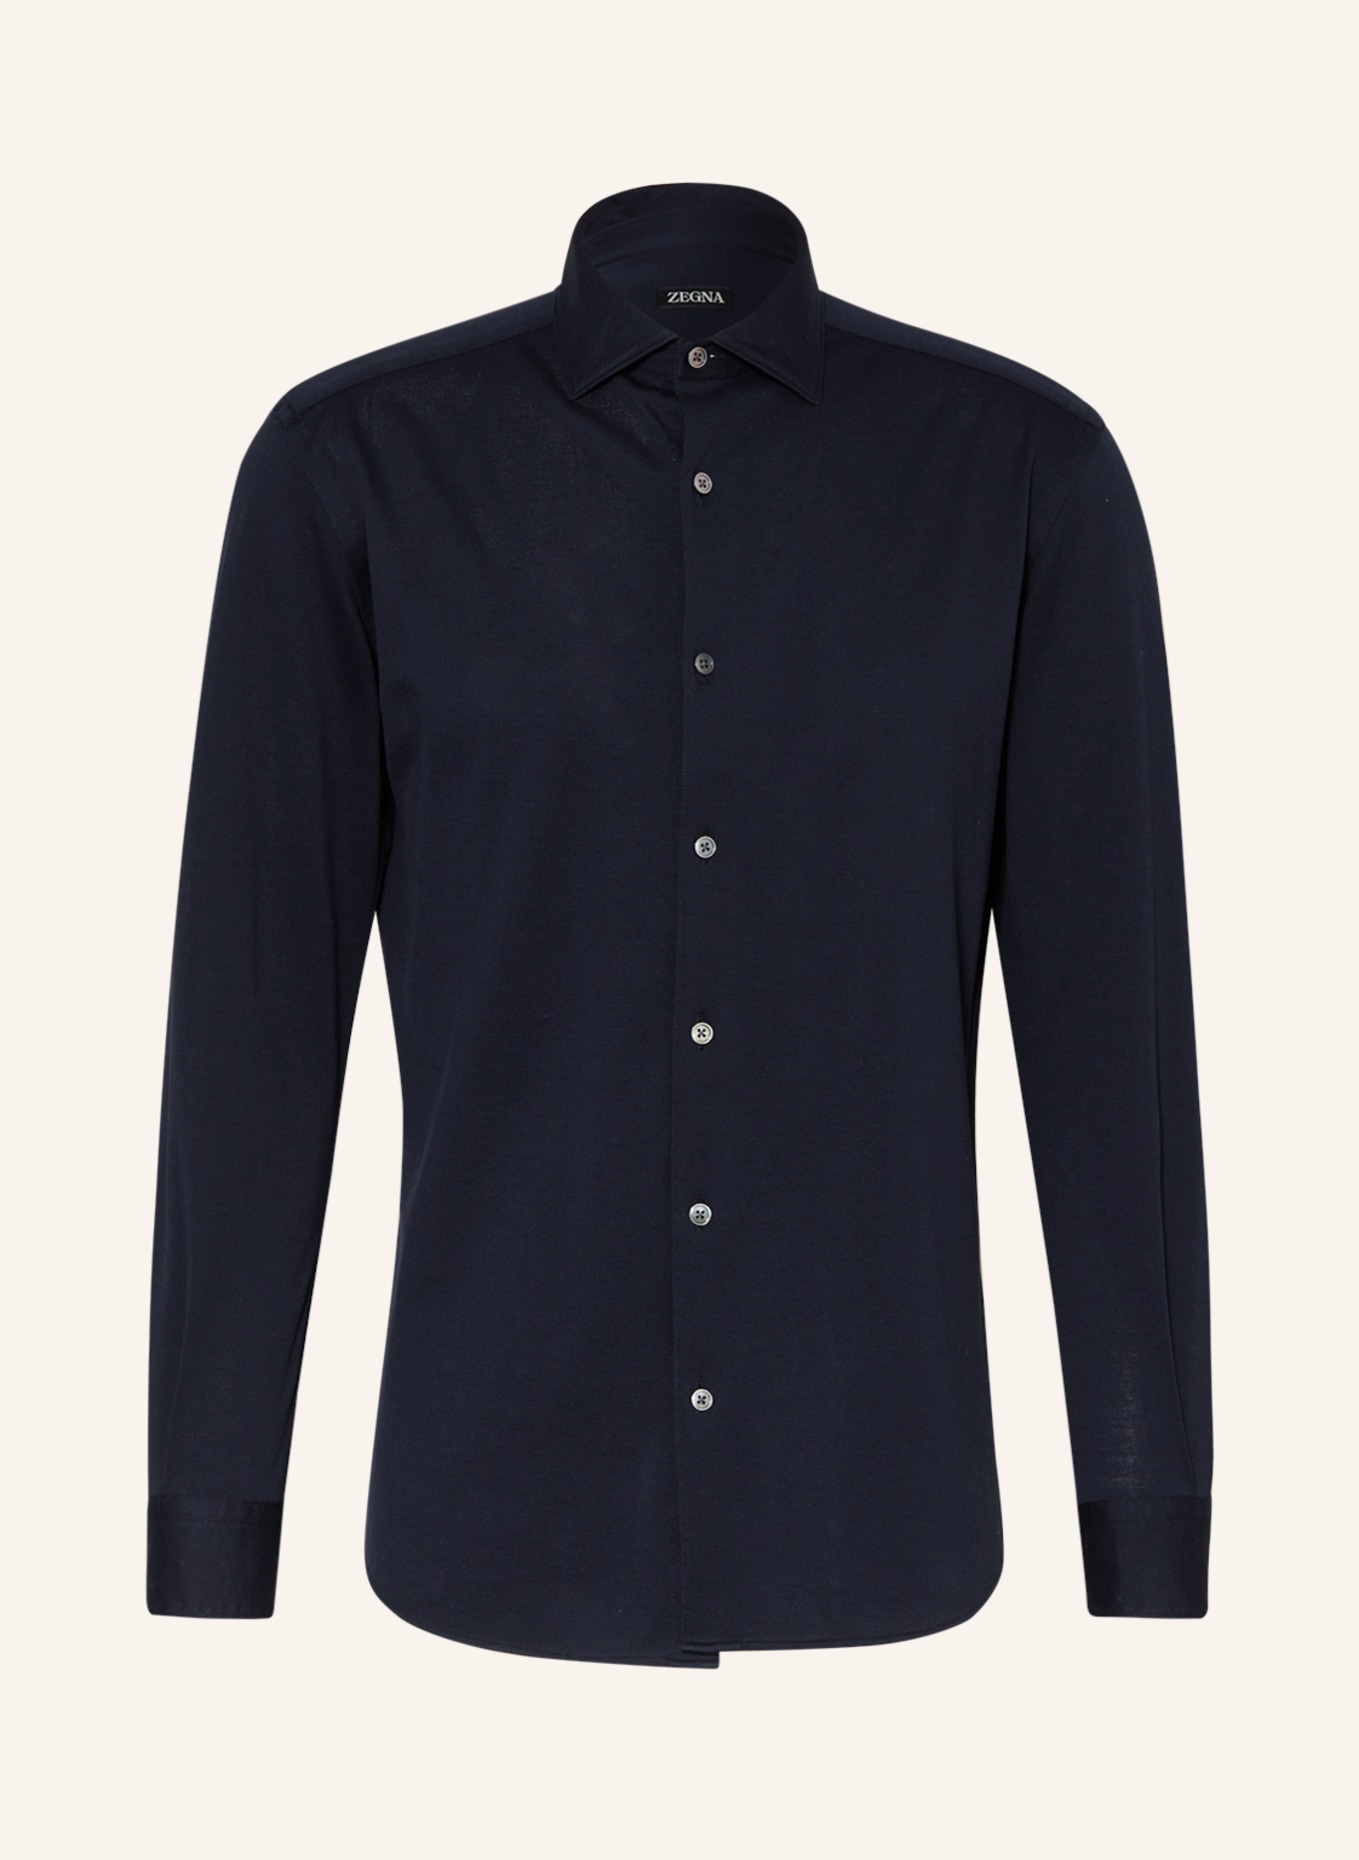 ZEGNA Jersey shirt regular fit, Color: DARK BLUE (Image 1)